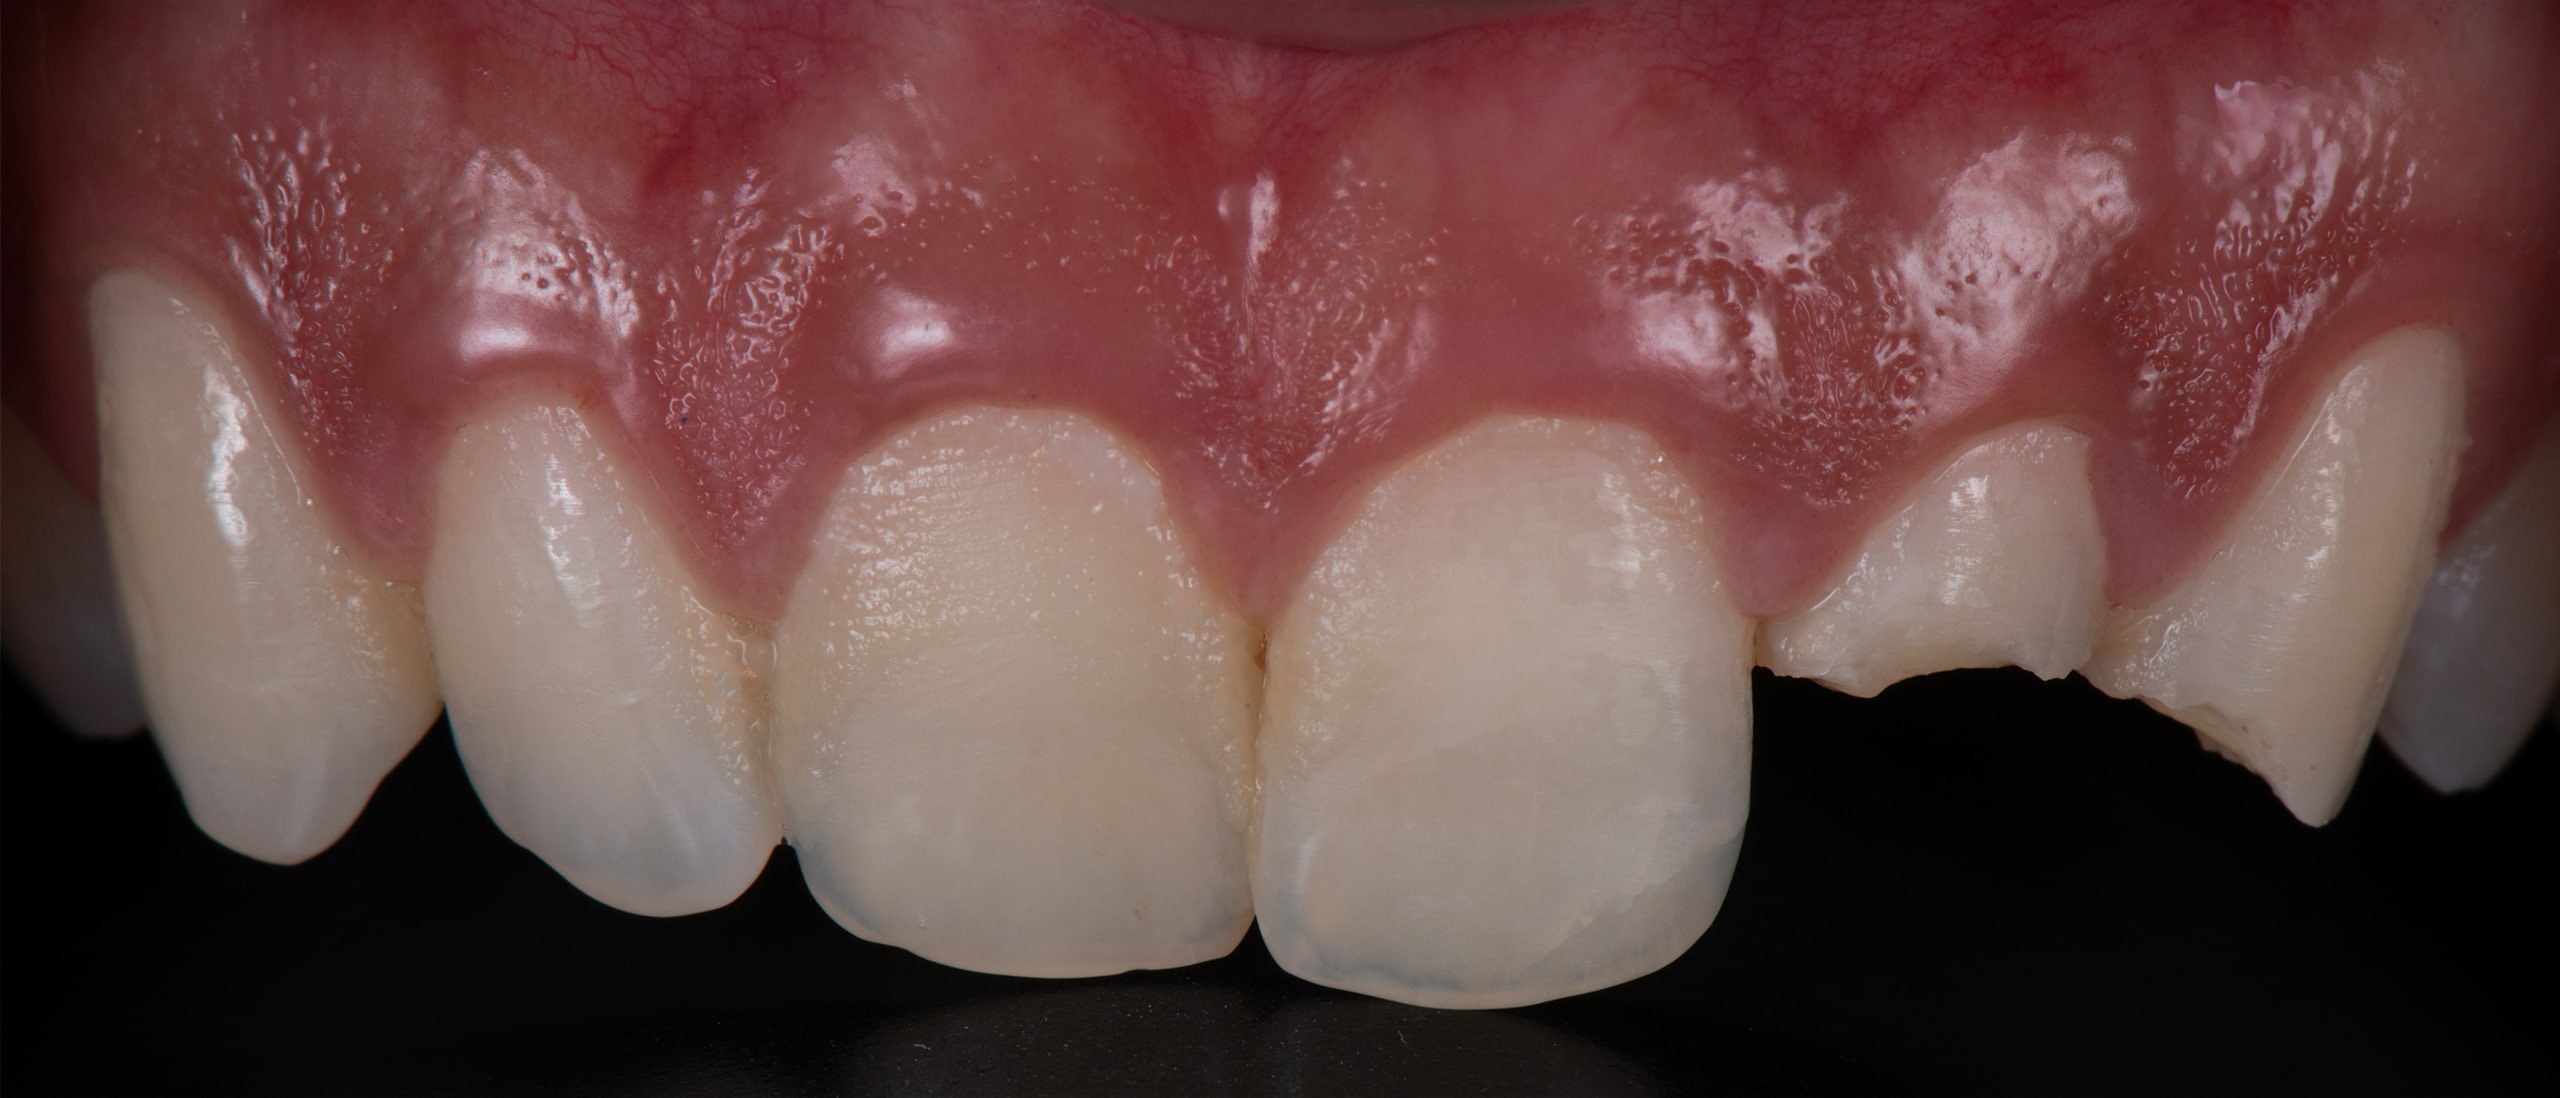 Dentadura de un paciente antes del tratamiento de odontología conservadora.